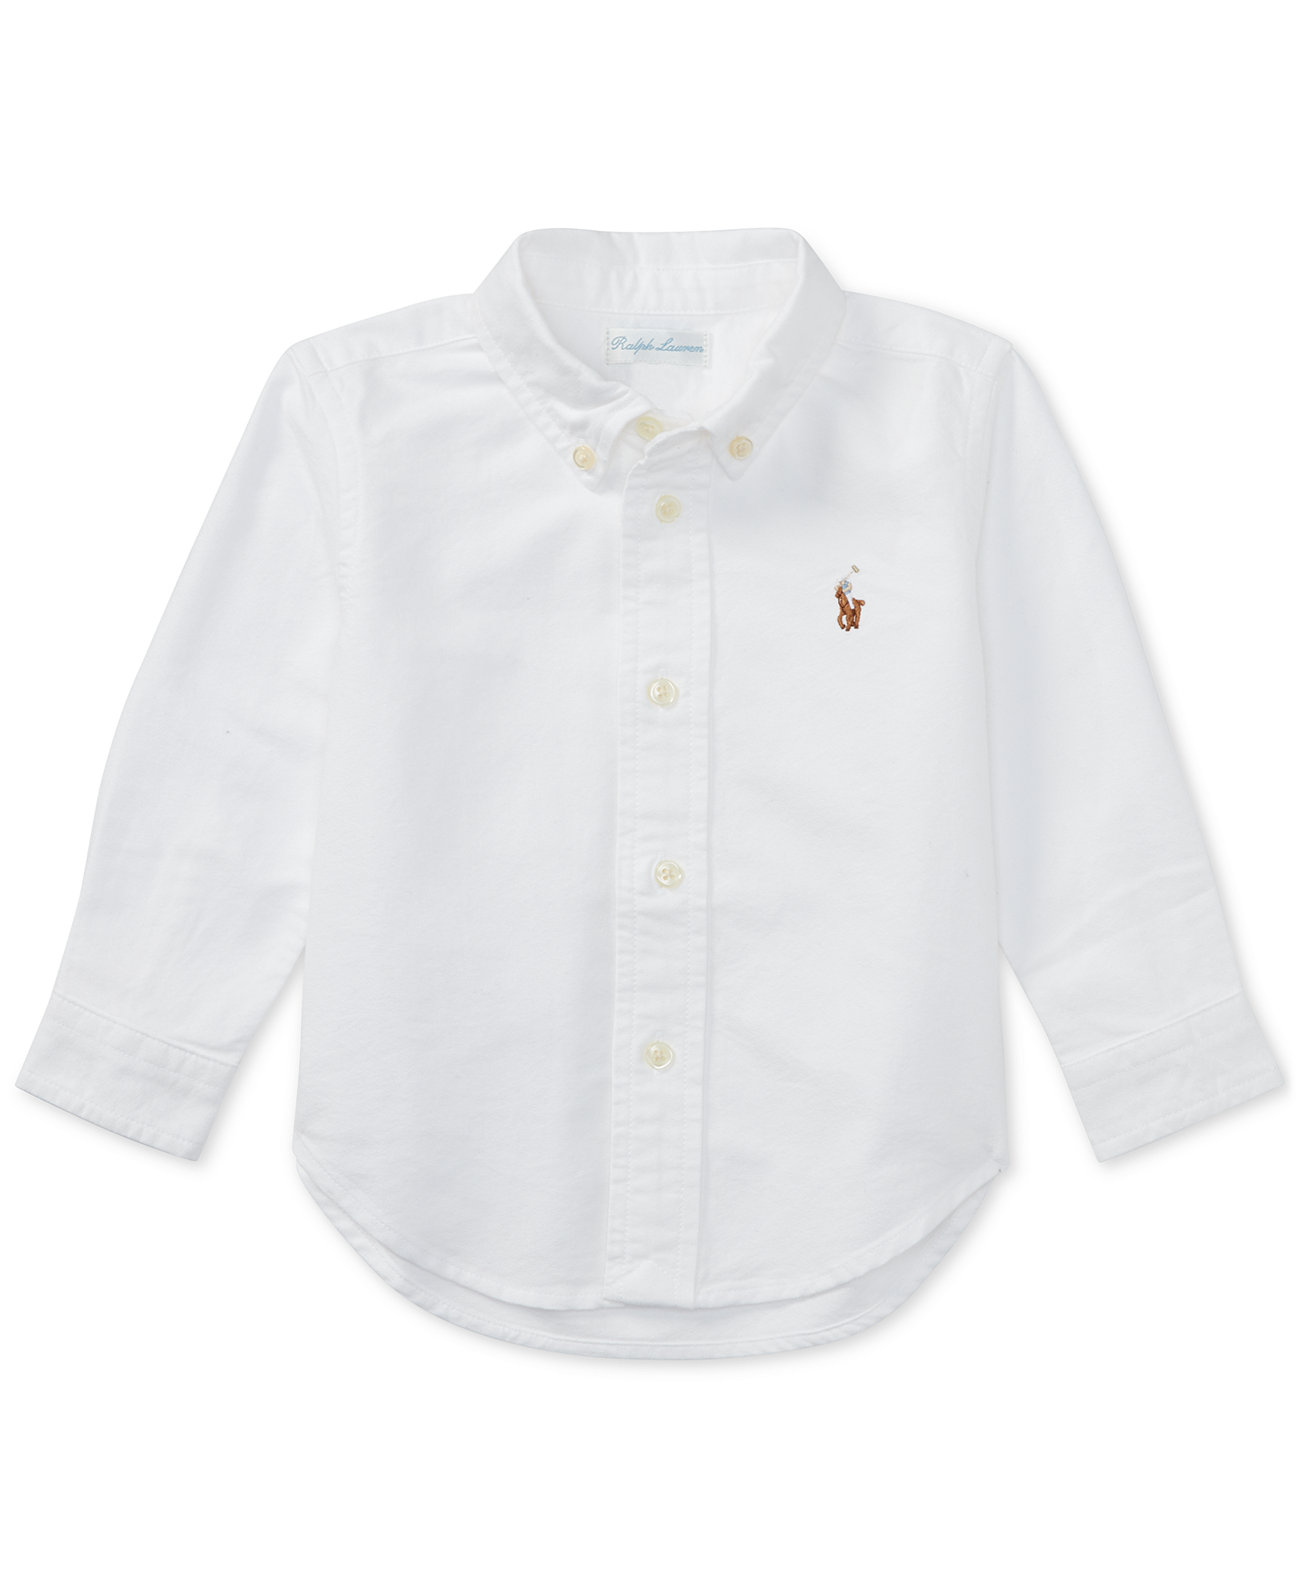 Однотонная оксфордская рубашка для мальчиков от Ralph Lauren Polo Ralph Lauren